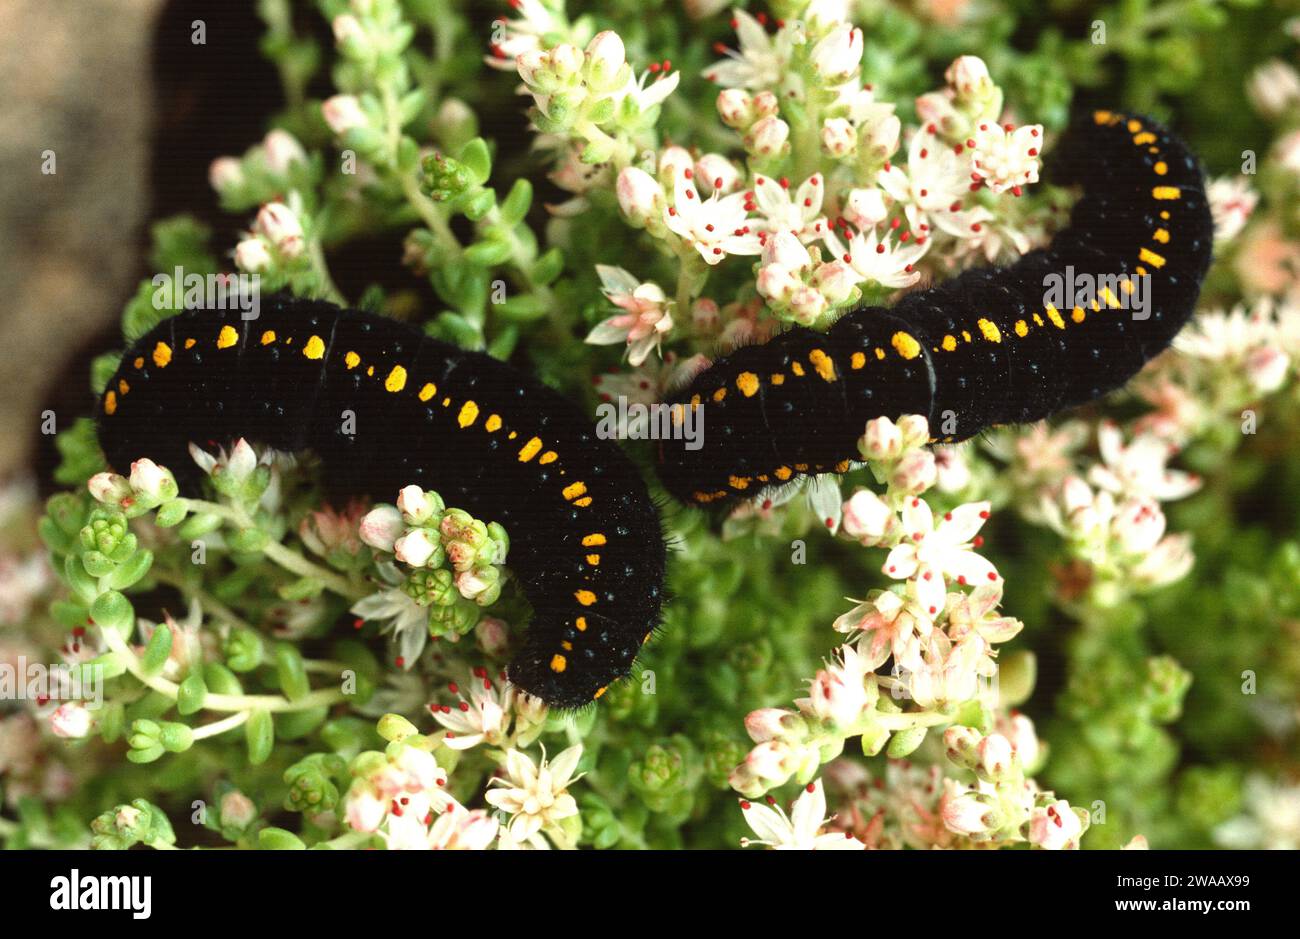 Mountain Apollo (Parnassius apollo) is a butterfly native to Europe mountains. Caterpillar on a feeding plant (Sedum sp.). Stock Photo